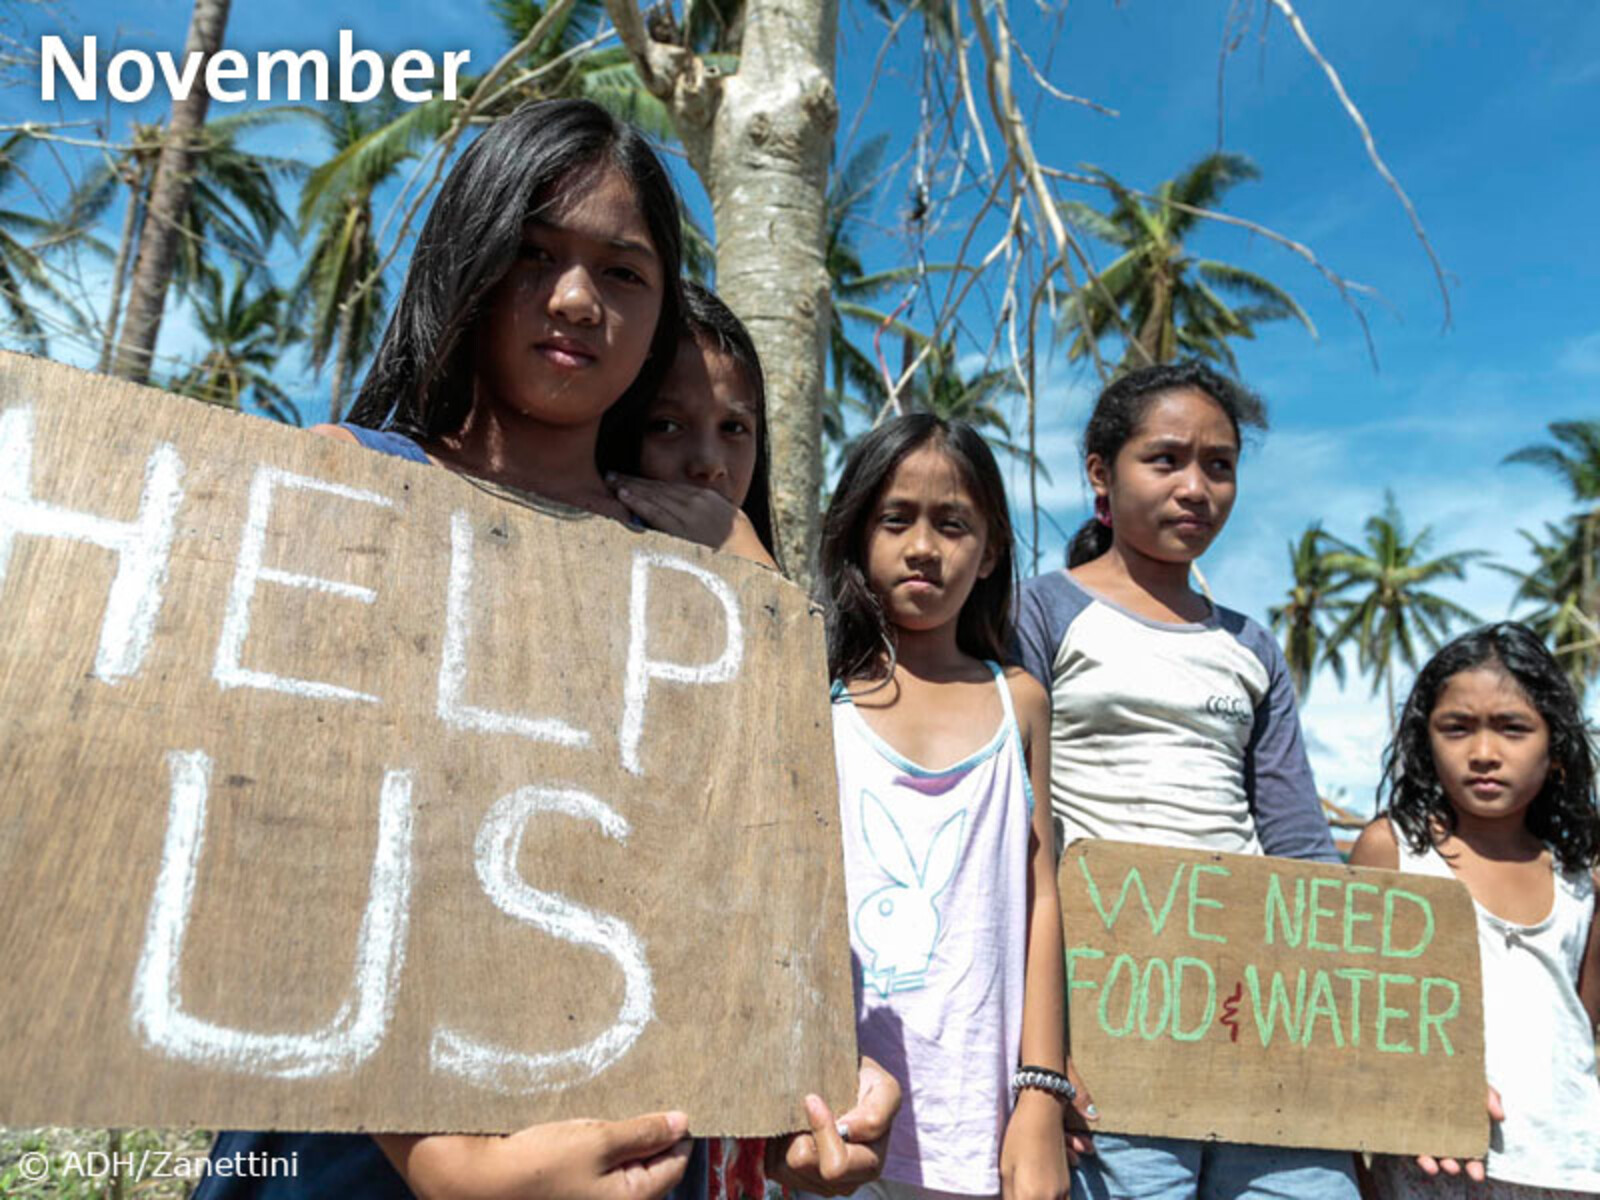 8. November – Mit voller Wucht traf Taifun Haiyan die zentralen Inseln der Philippinen und hinterließ eine Schneise der Verwüstung.